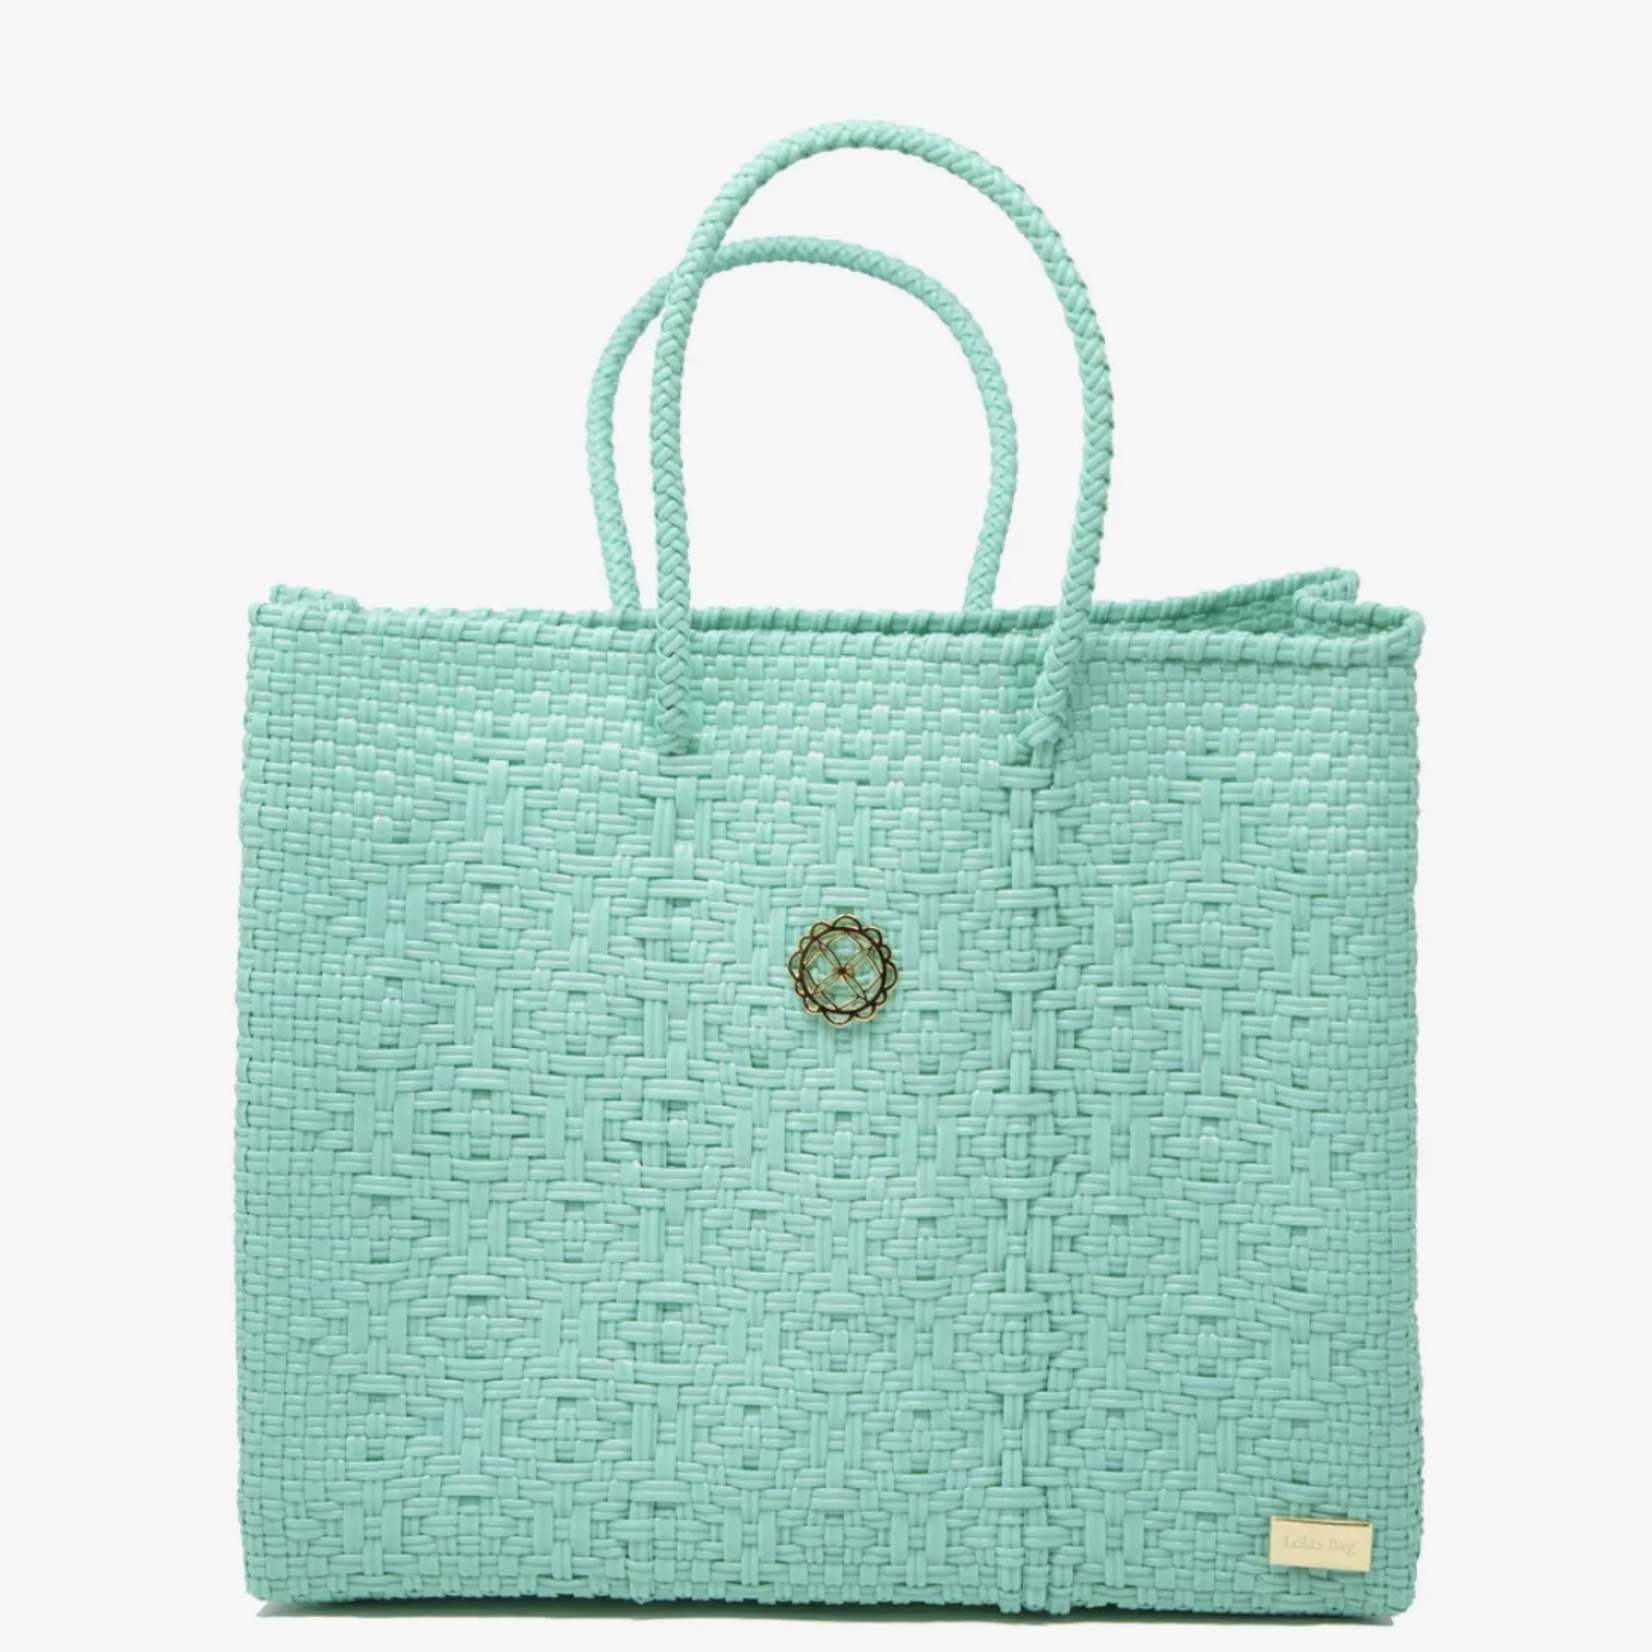 Lola's Bag Small Aqua Green Tote Bag